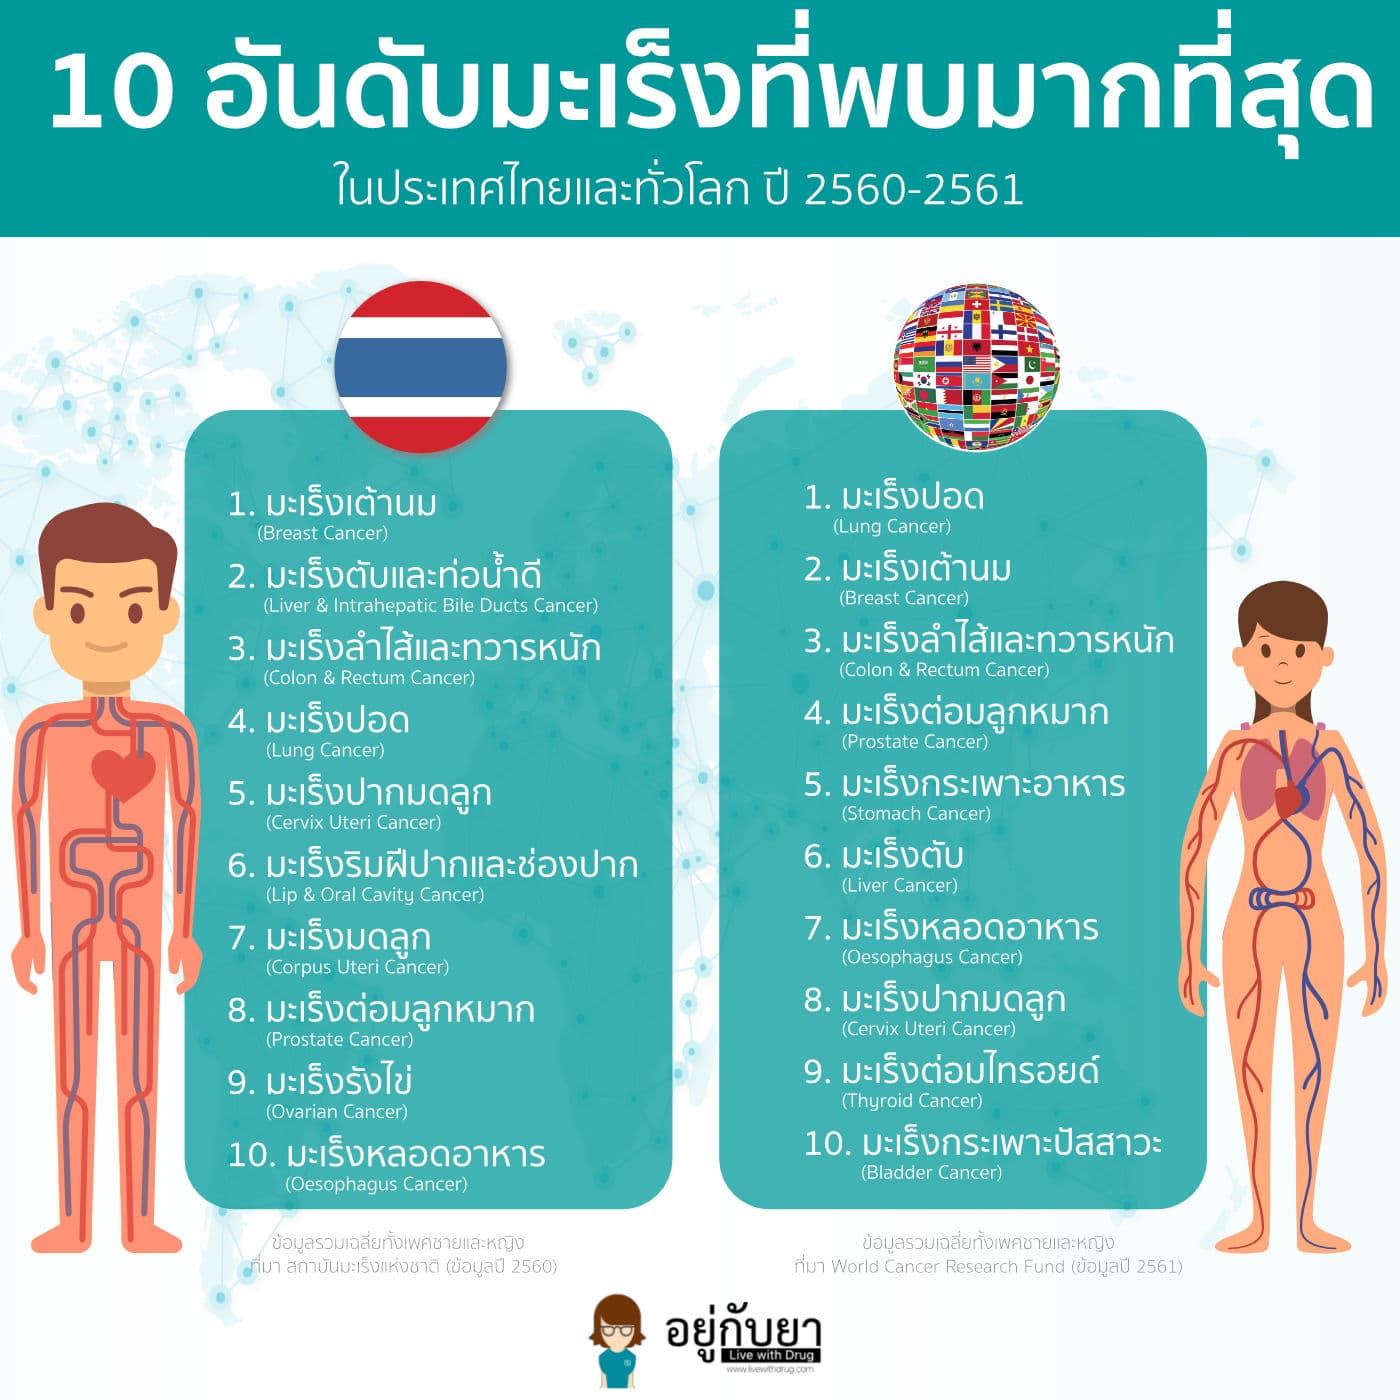 top 10 cancer 2017 thailand 2018 worldwide